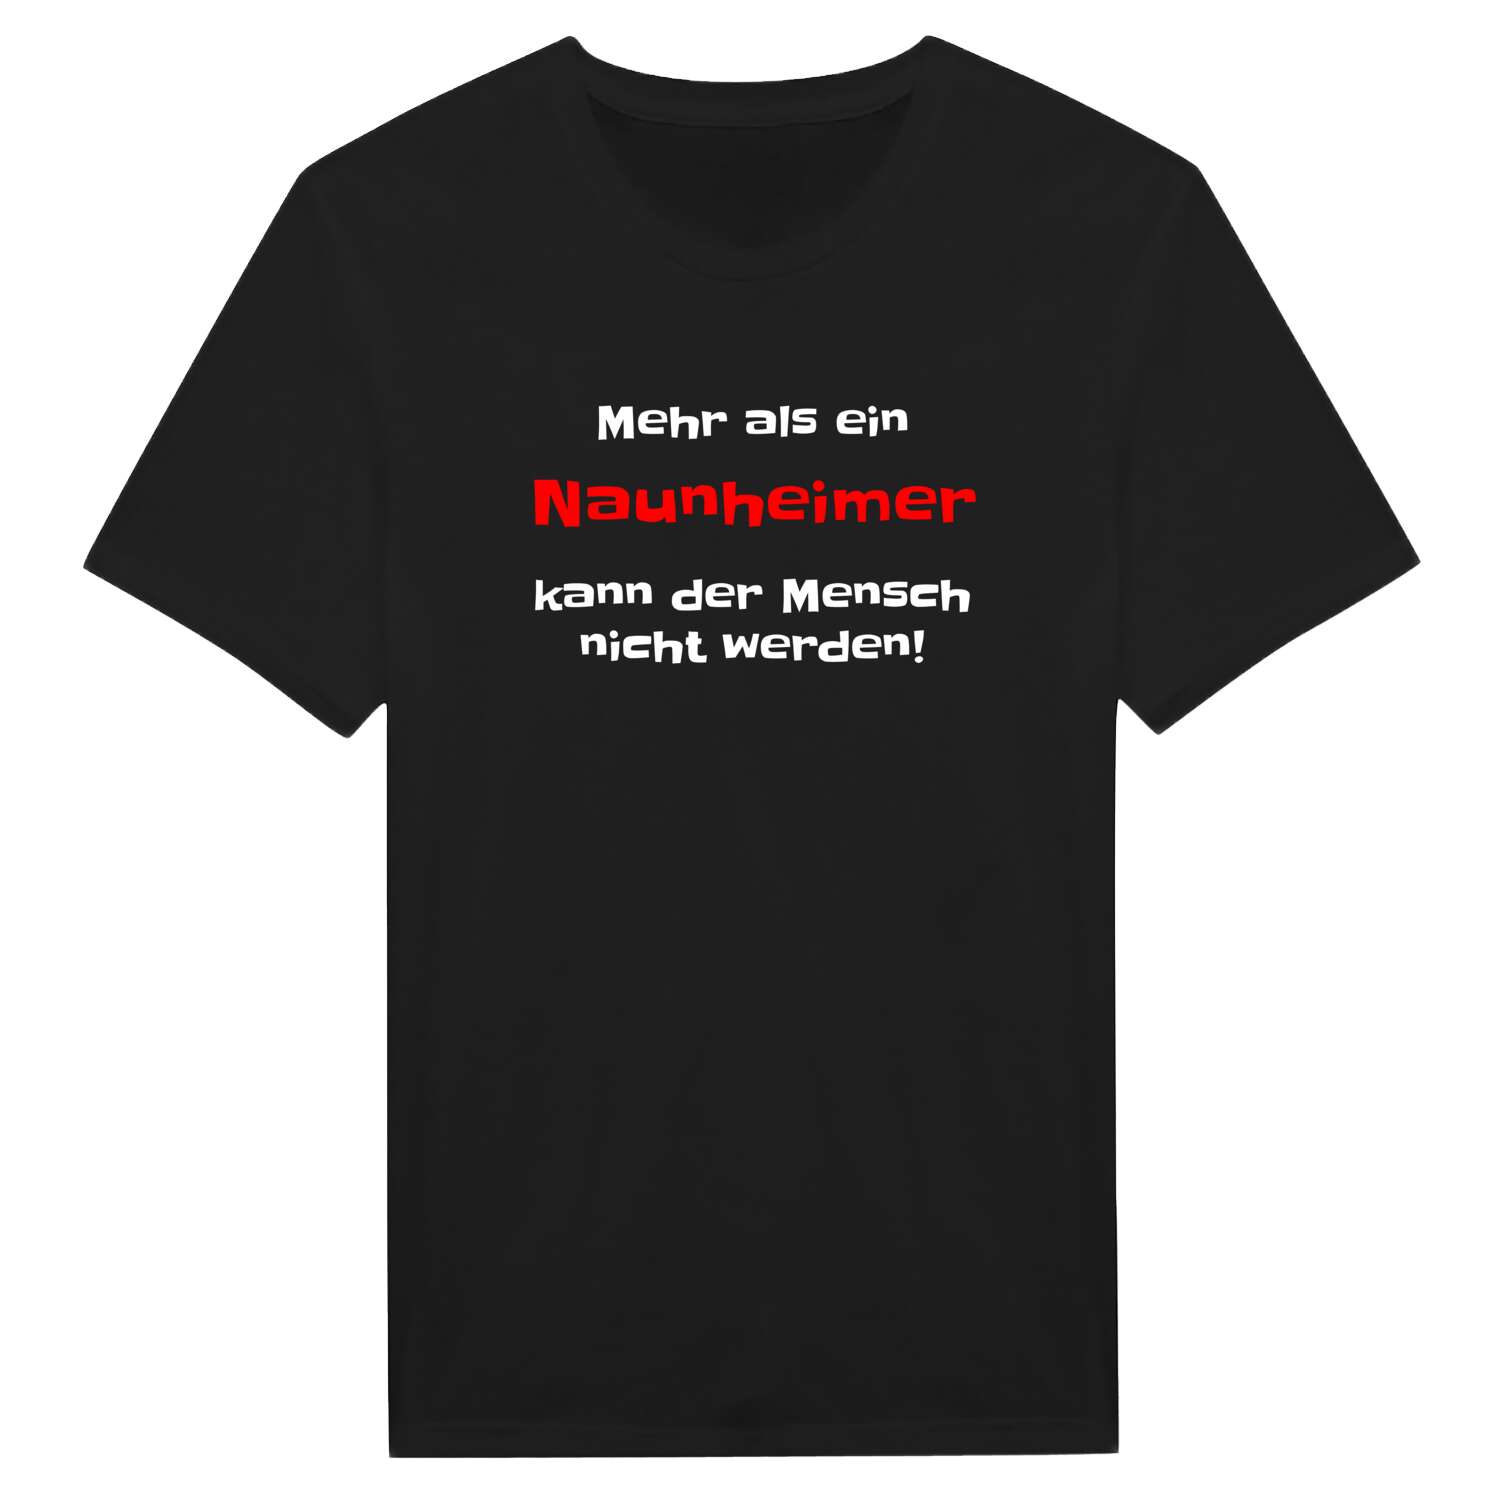 Naunheim T-Shirt »Mehr als ein«